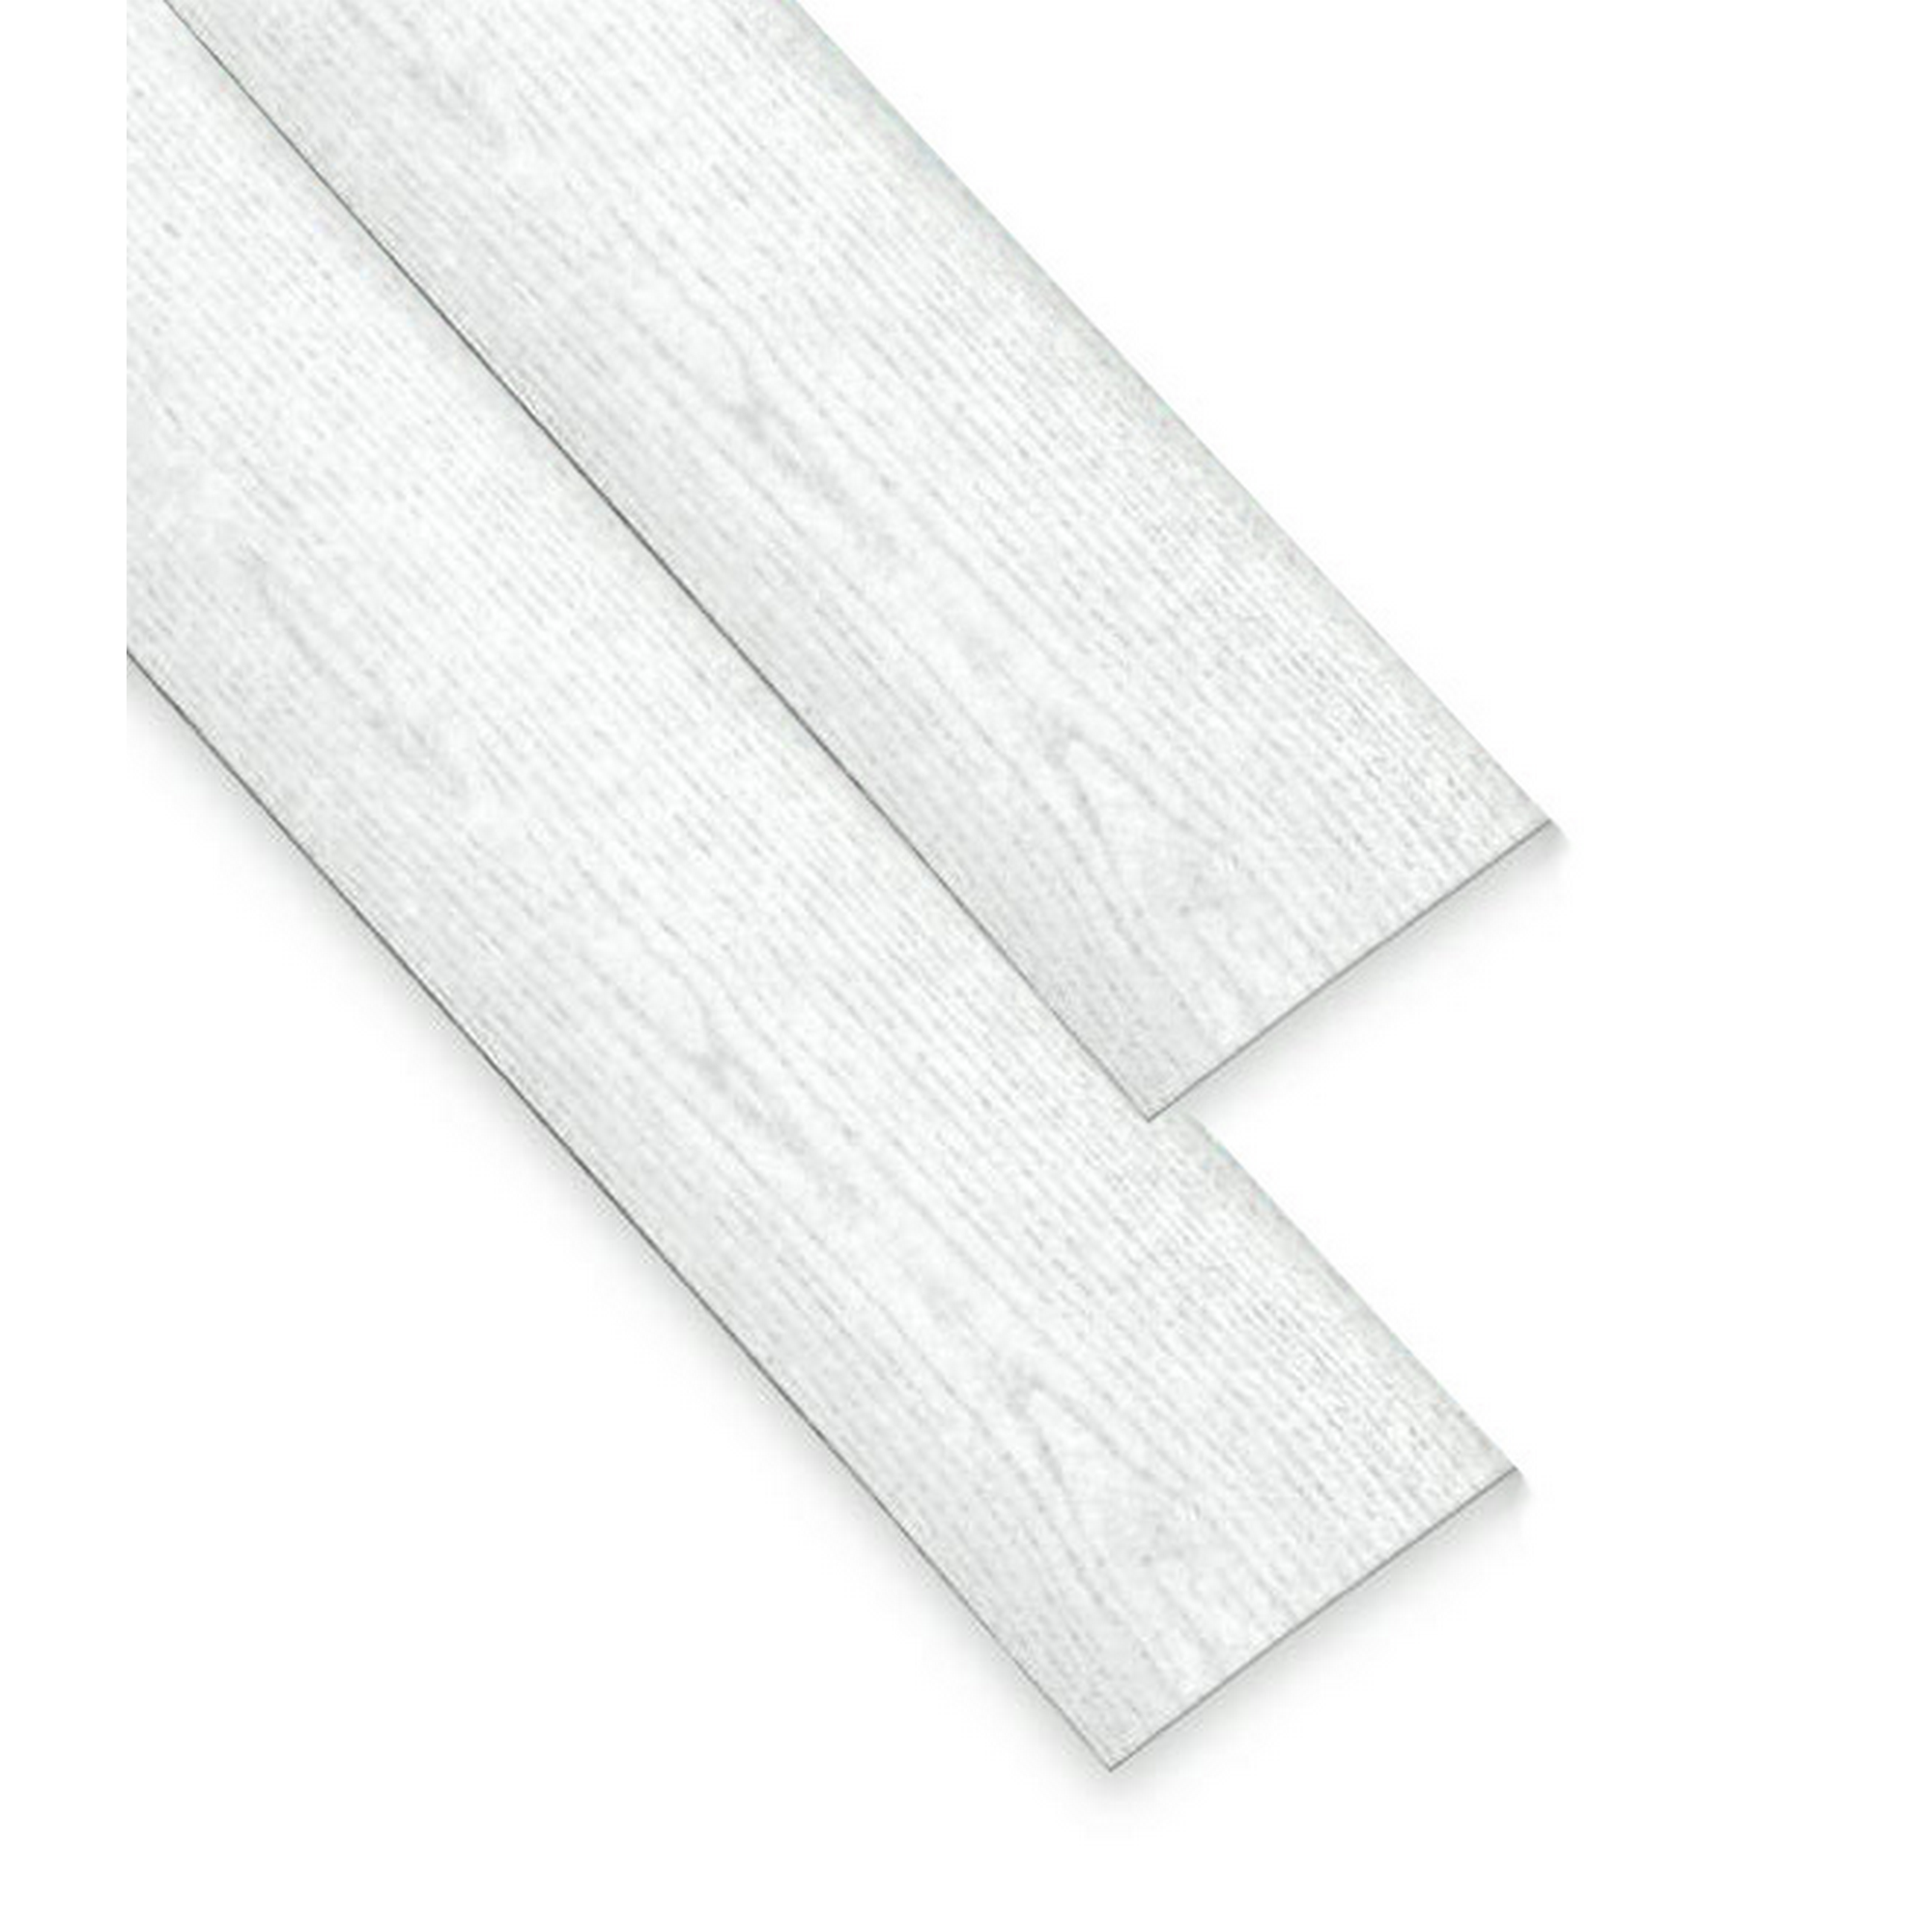 Paneele Esche weiß, 260 x 15 x 0,8 cm, 7 Stück + product picture